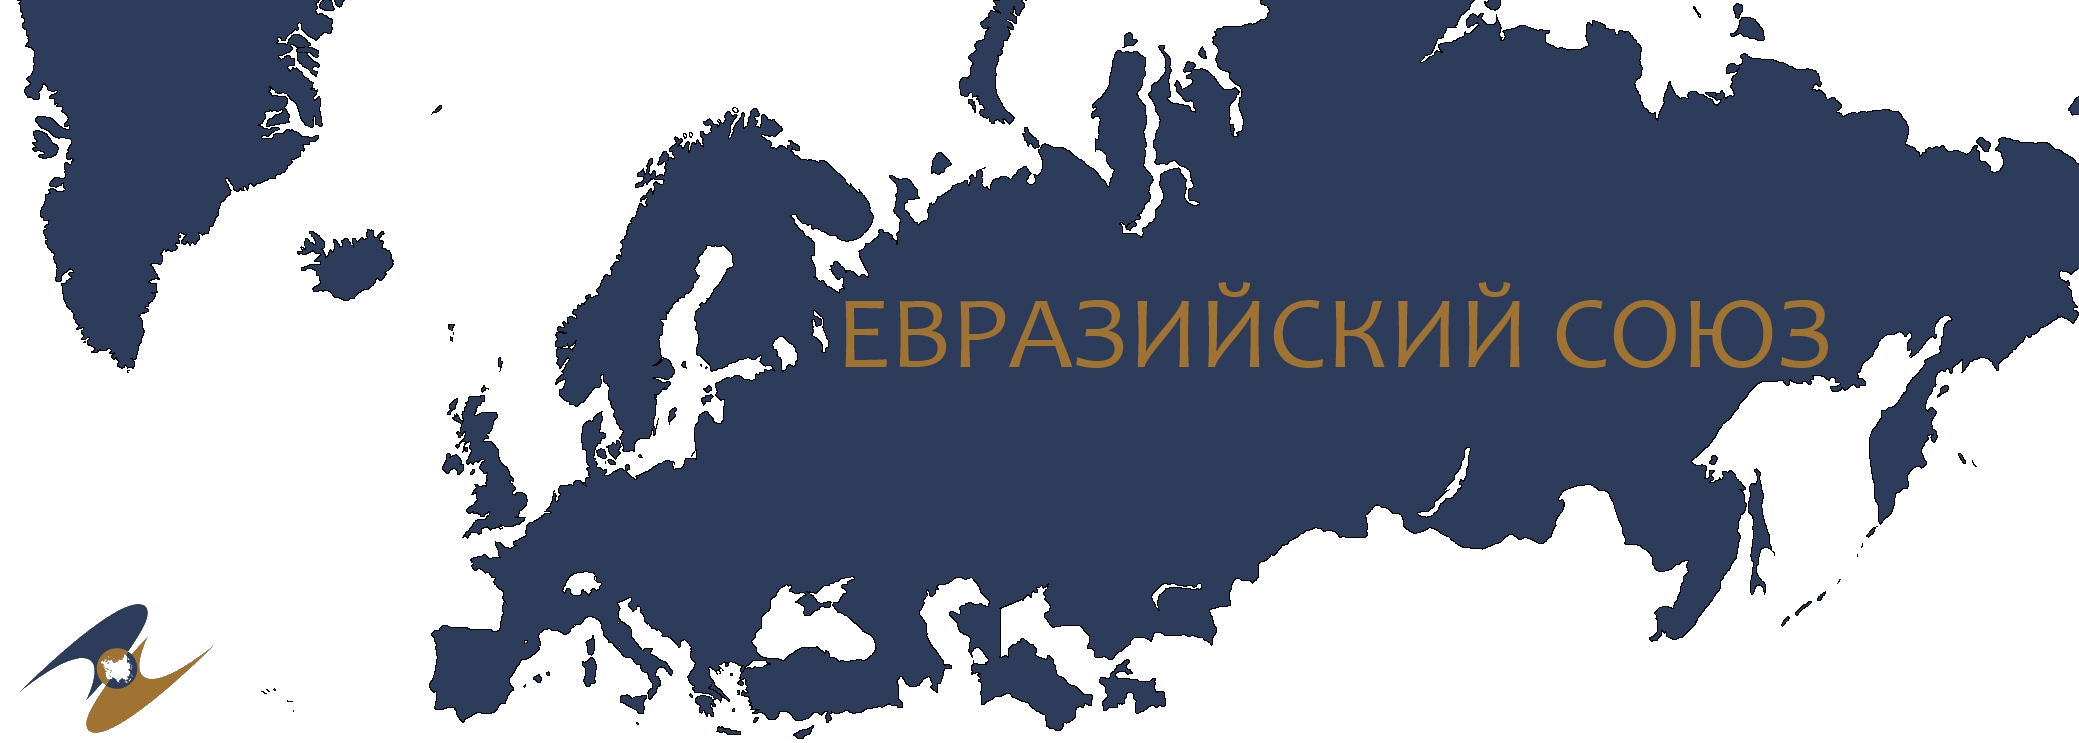 Россия евразийский союз. ЕАС Евразийский экономический Союз. Карта таможенного Союза ЕАЭС. Евразийский экономический Союз страны на карте. Евразийский Союз (ЕАС),.